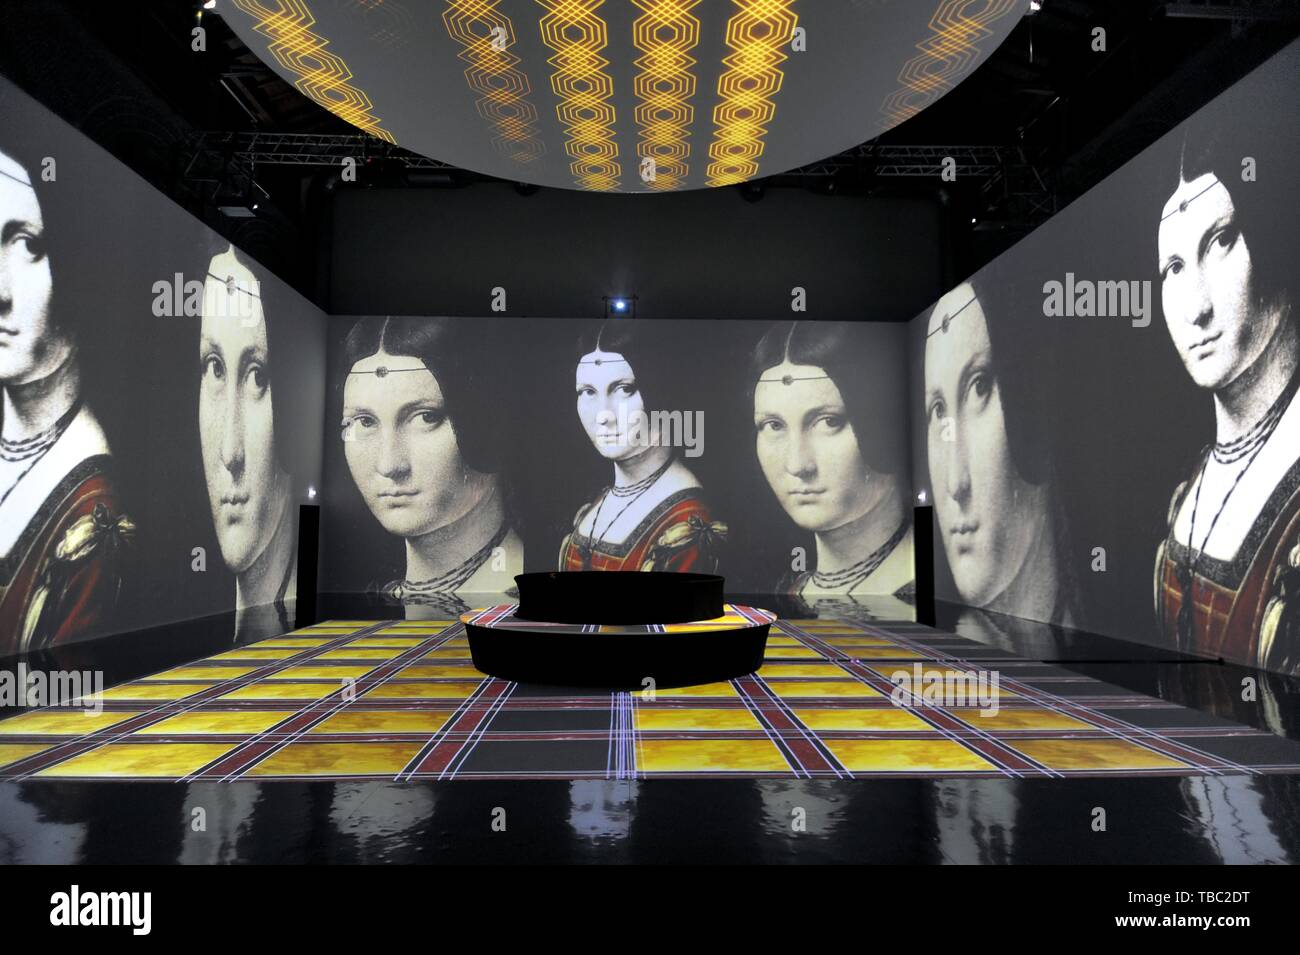 Mailand (Italien), Multimedia Ausstellung über das Genie von Leonardo da Vinci 500 Jahre nach seinem Tod Stockfoto